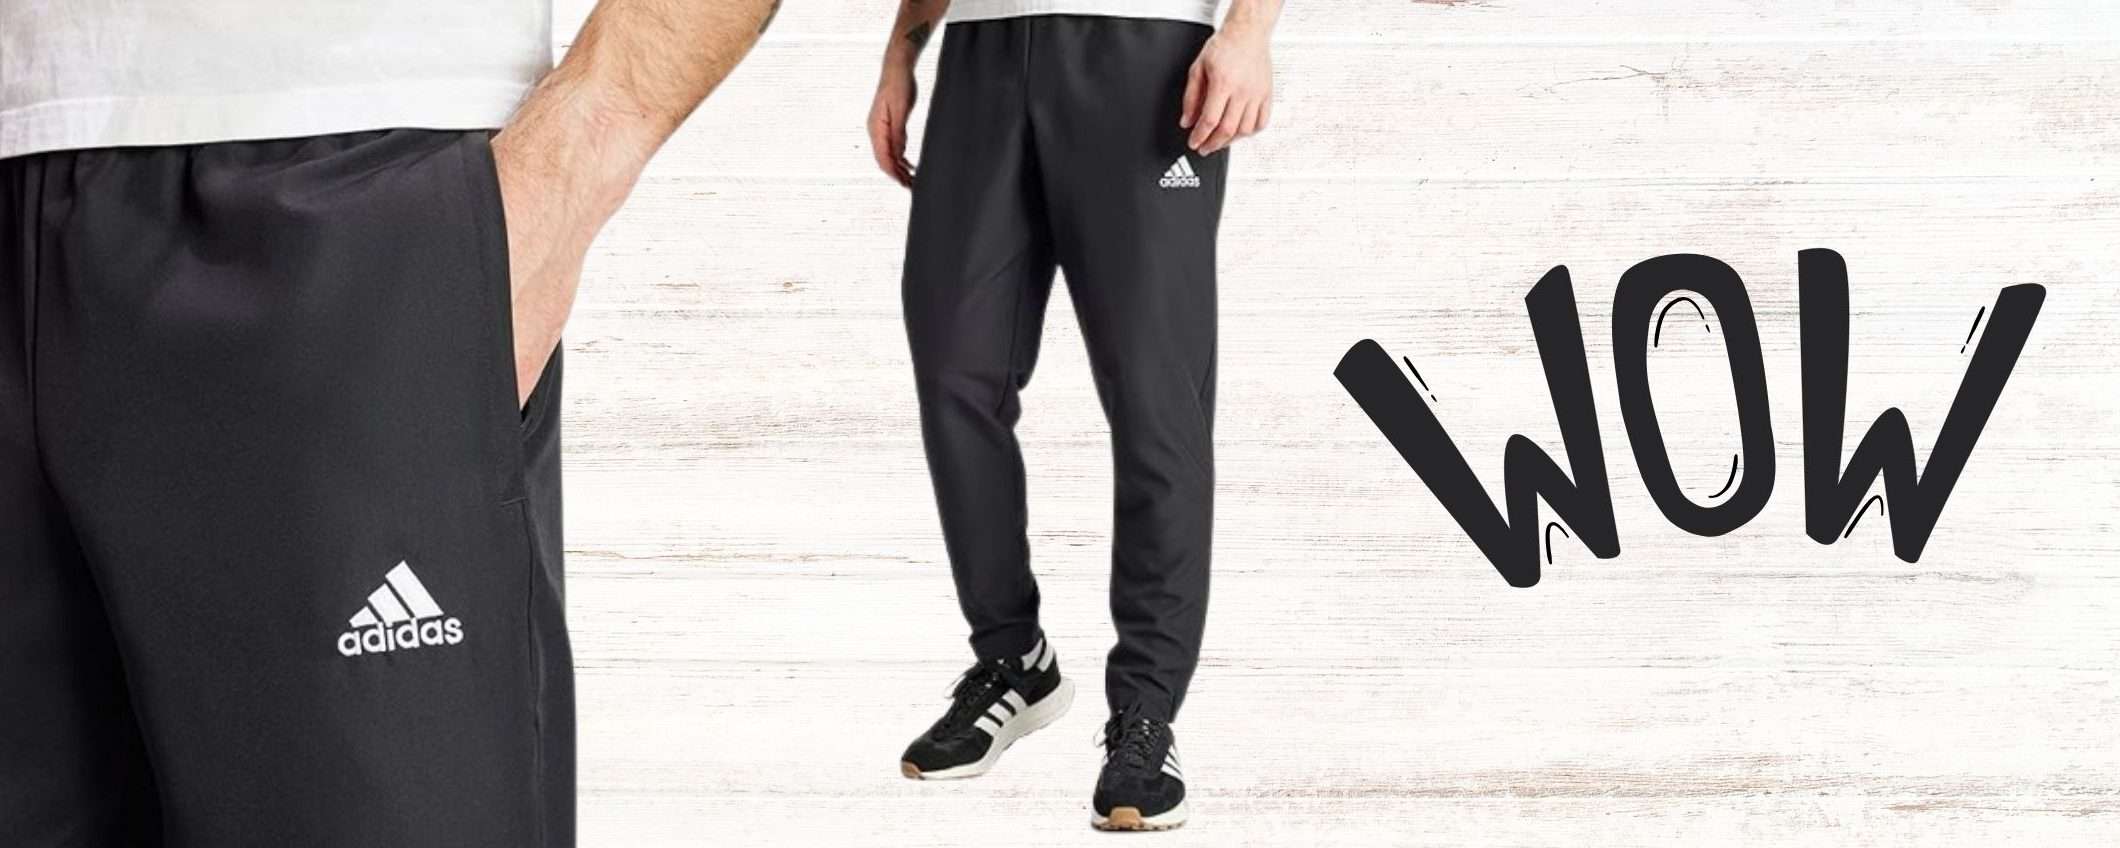 Pantalone Adidas da 15€ su Amazon: sconto STRATOSFERICO fino al 54%